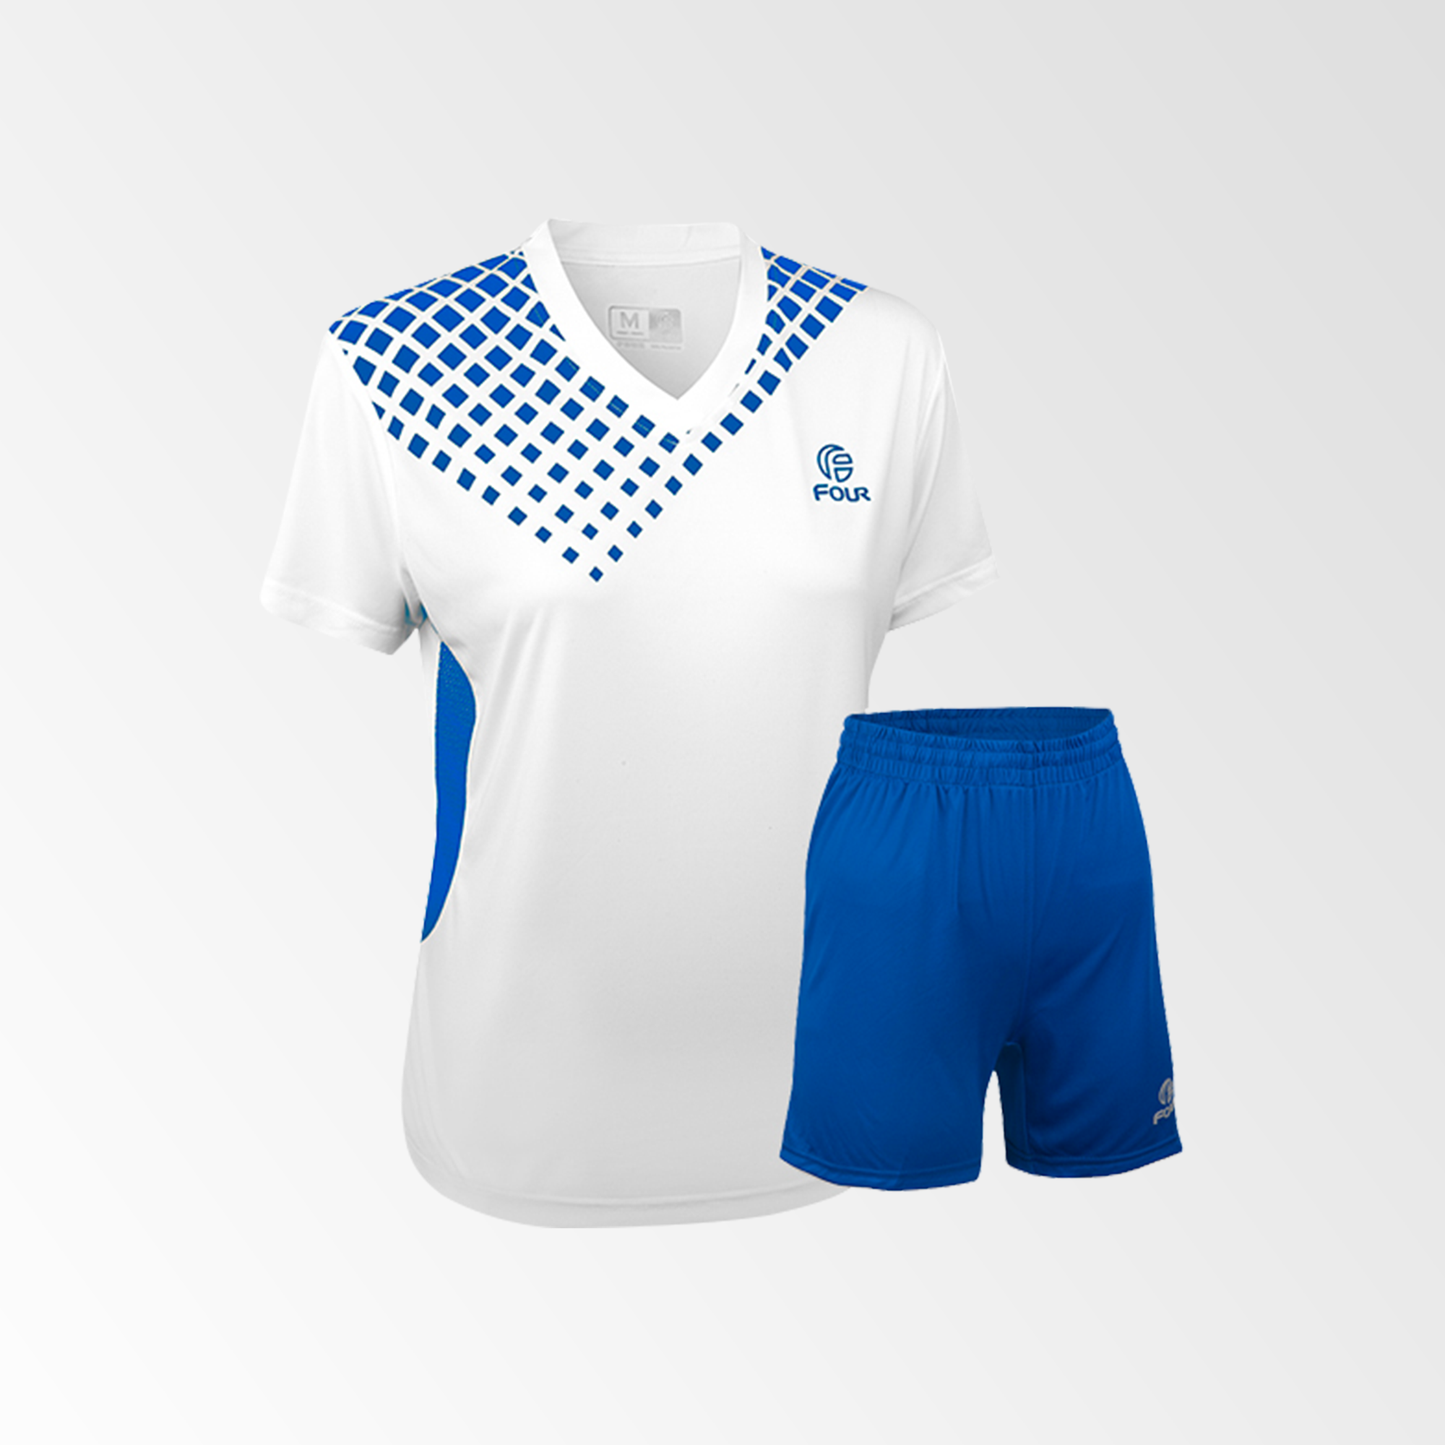 Camiseta de Futbol Mujer y Short Modelo Verona Blanco Azul Rey